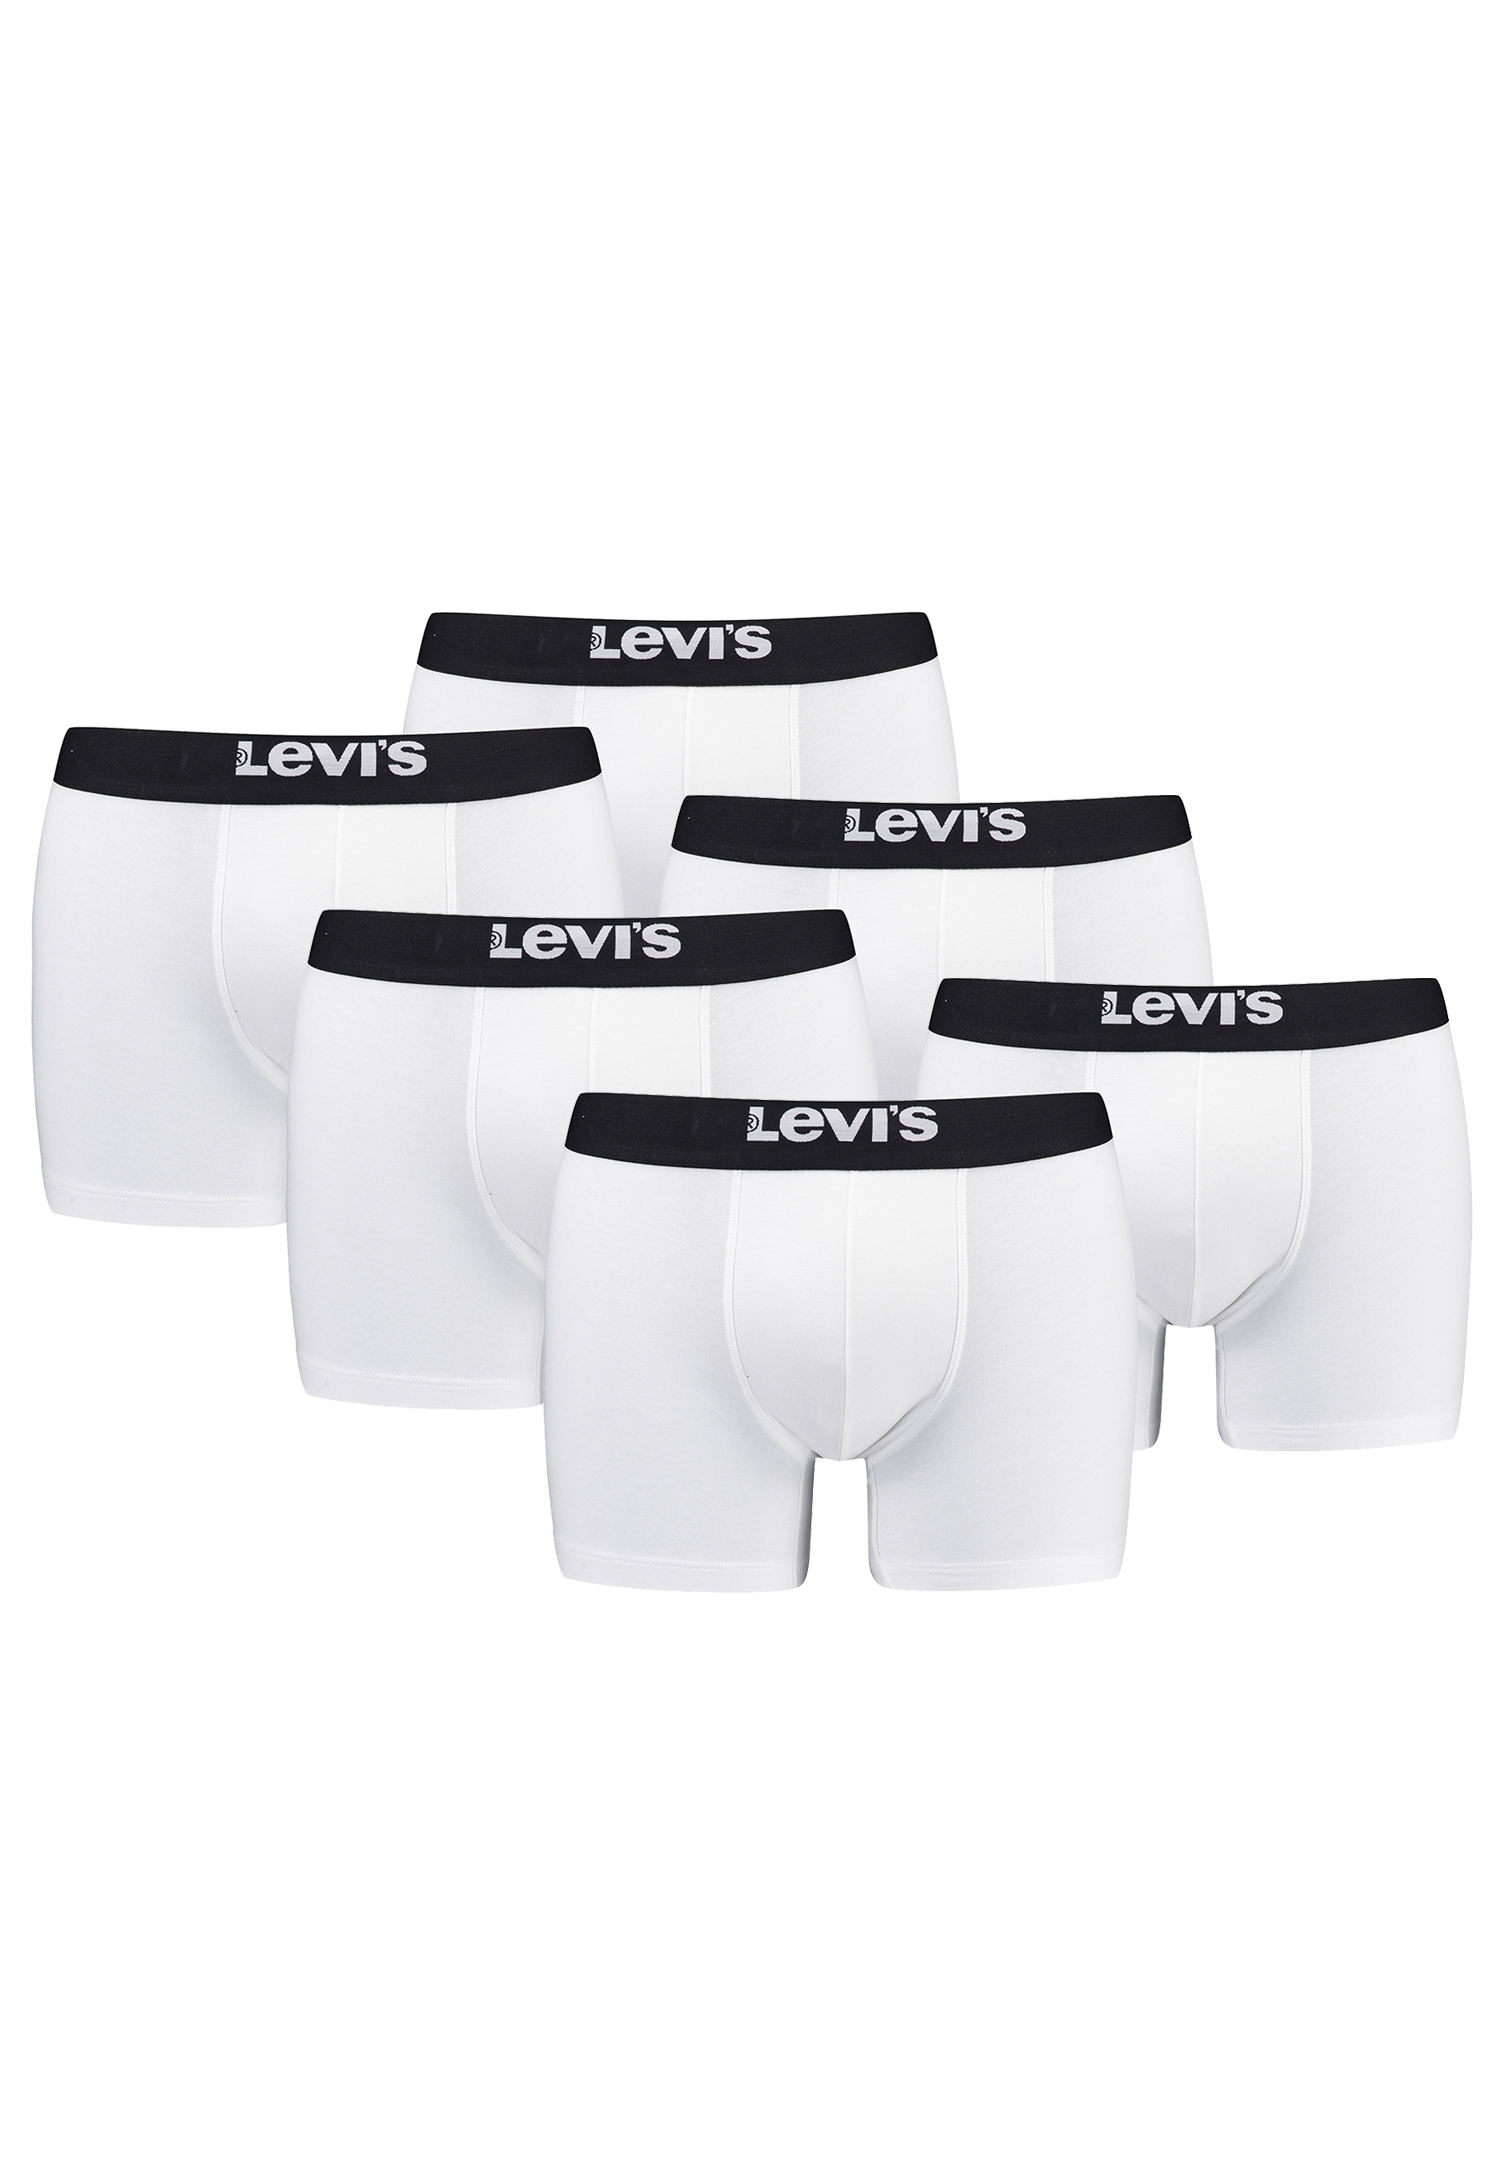 Levi's Solid Herren Boxershorts Unterwäsche aus Bio-Baumwolle im 6er Pack